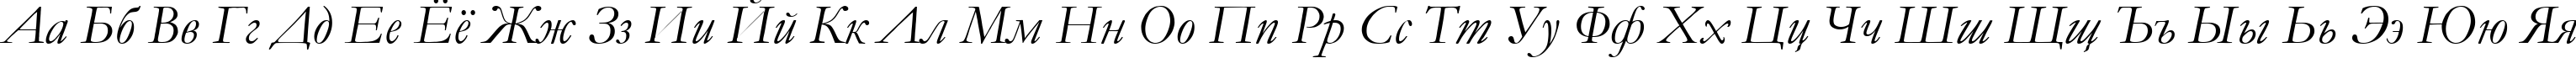 Пример написания русского алфавита шрифтом font254